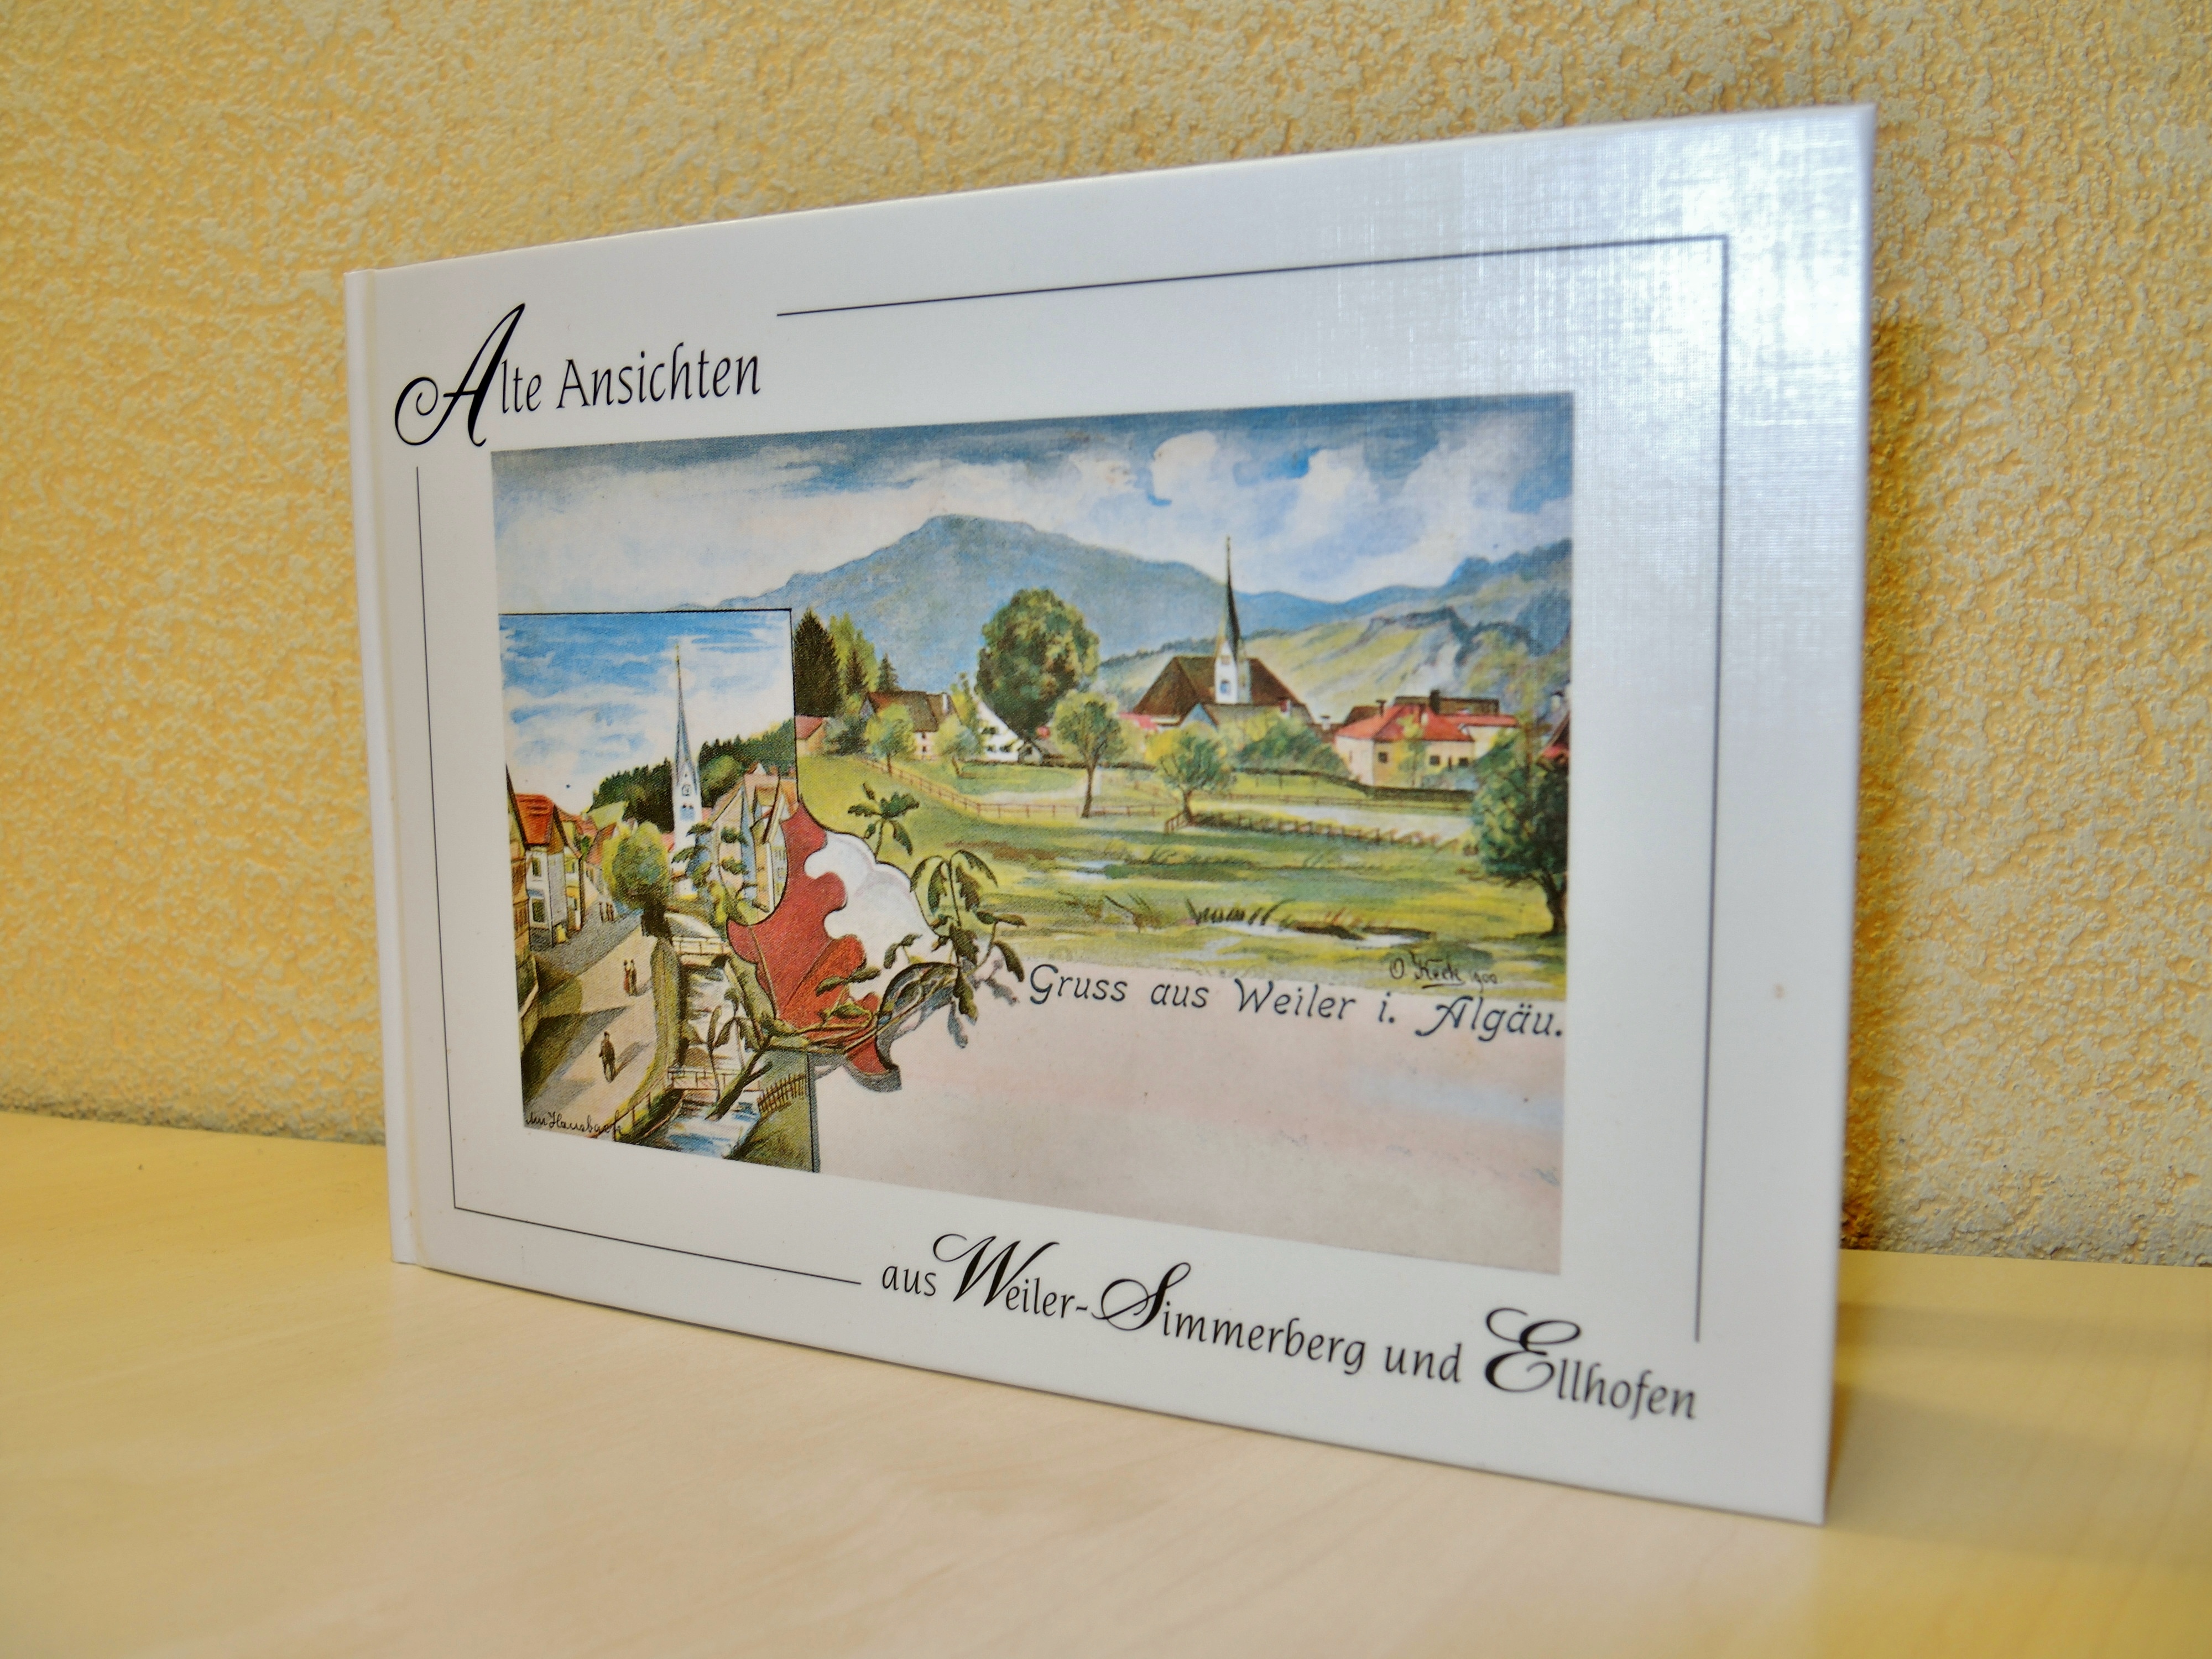  weißes Buch mit gemalten Bild von Ortschaft auf Vorderseite und Aufschrift "Alte Ansichten Weiler-Simmerberg-Ellhofen - das Bild wird mit Klick vergrößert 